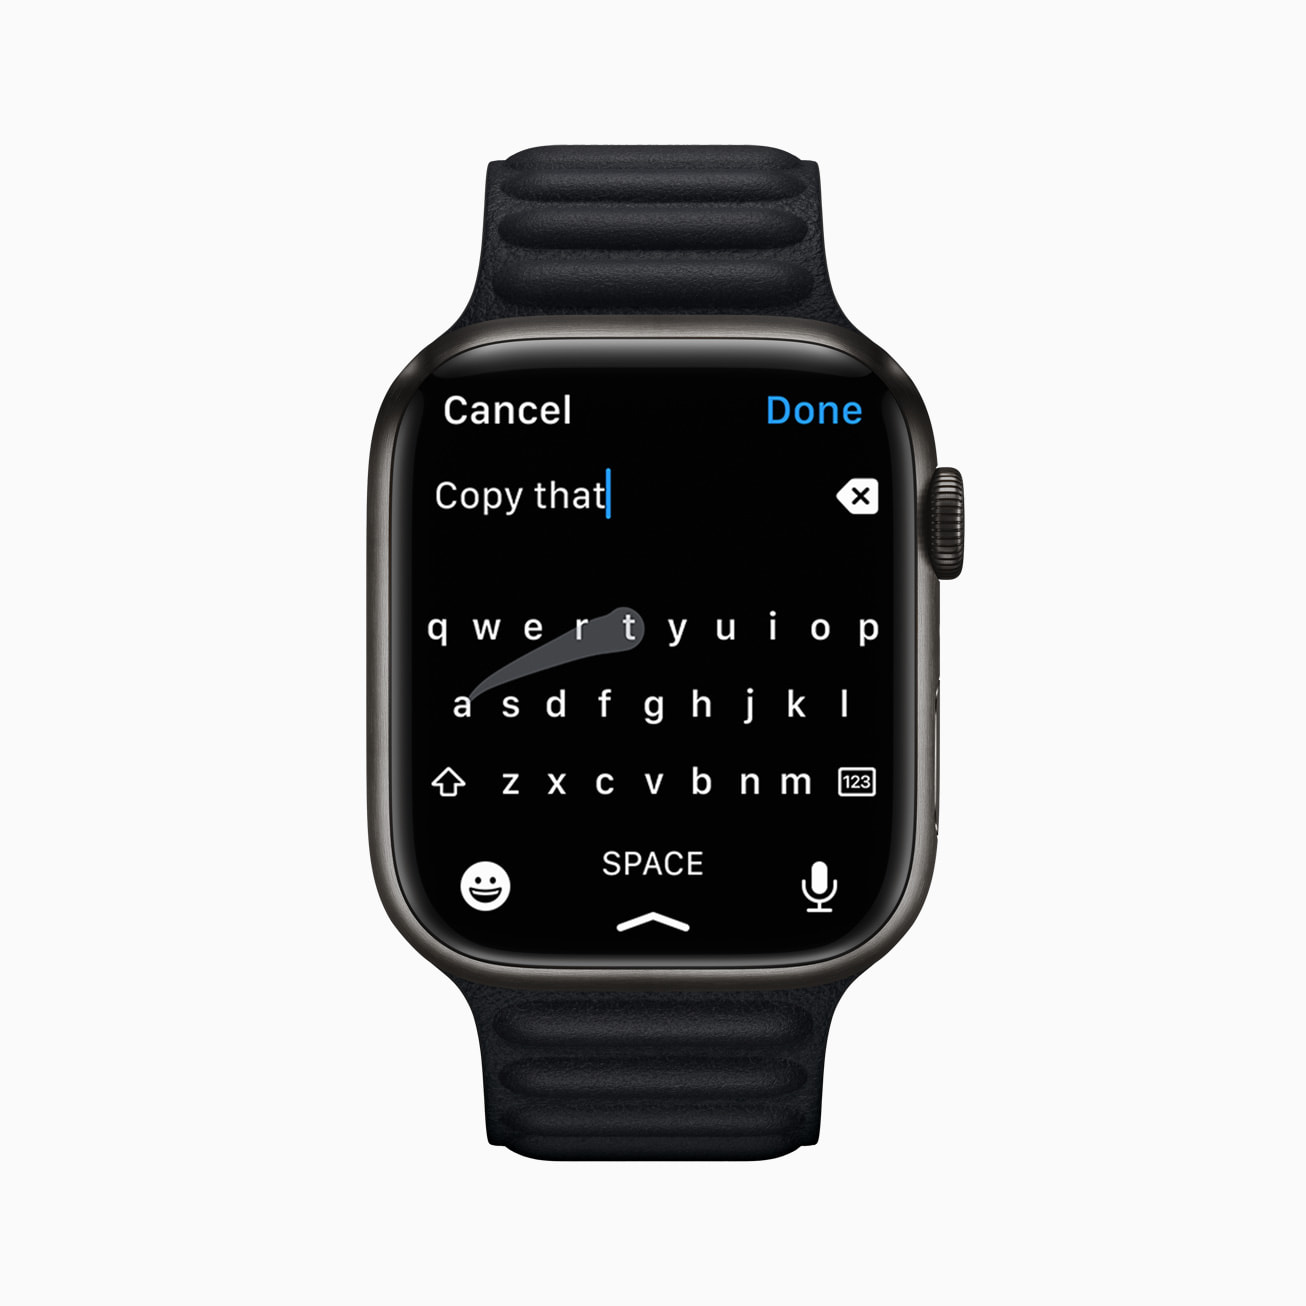 Apple Watch Series 7's Swipe Keyboard